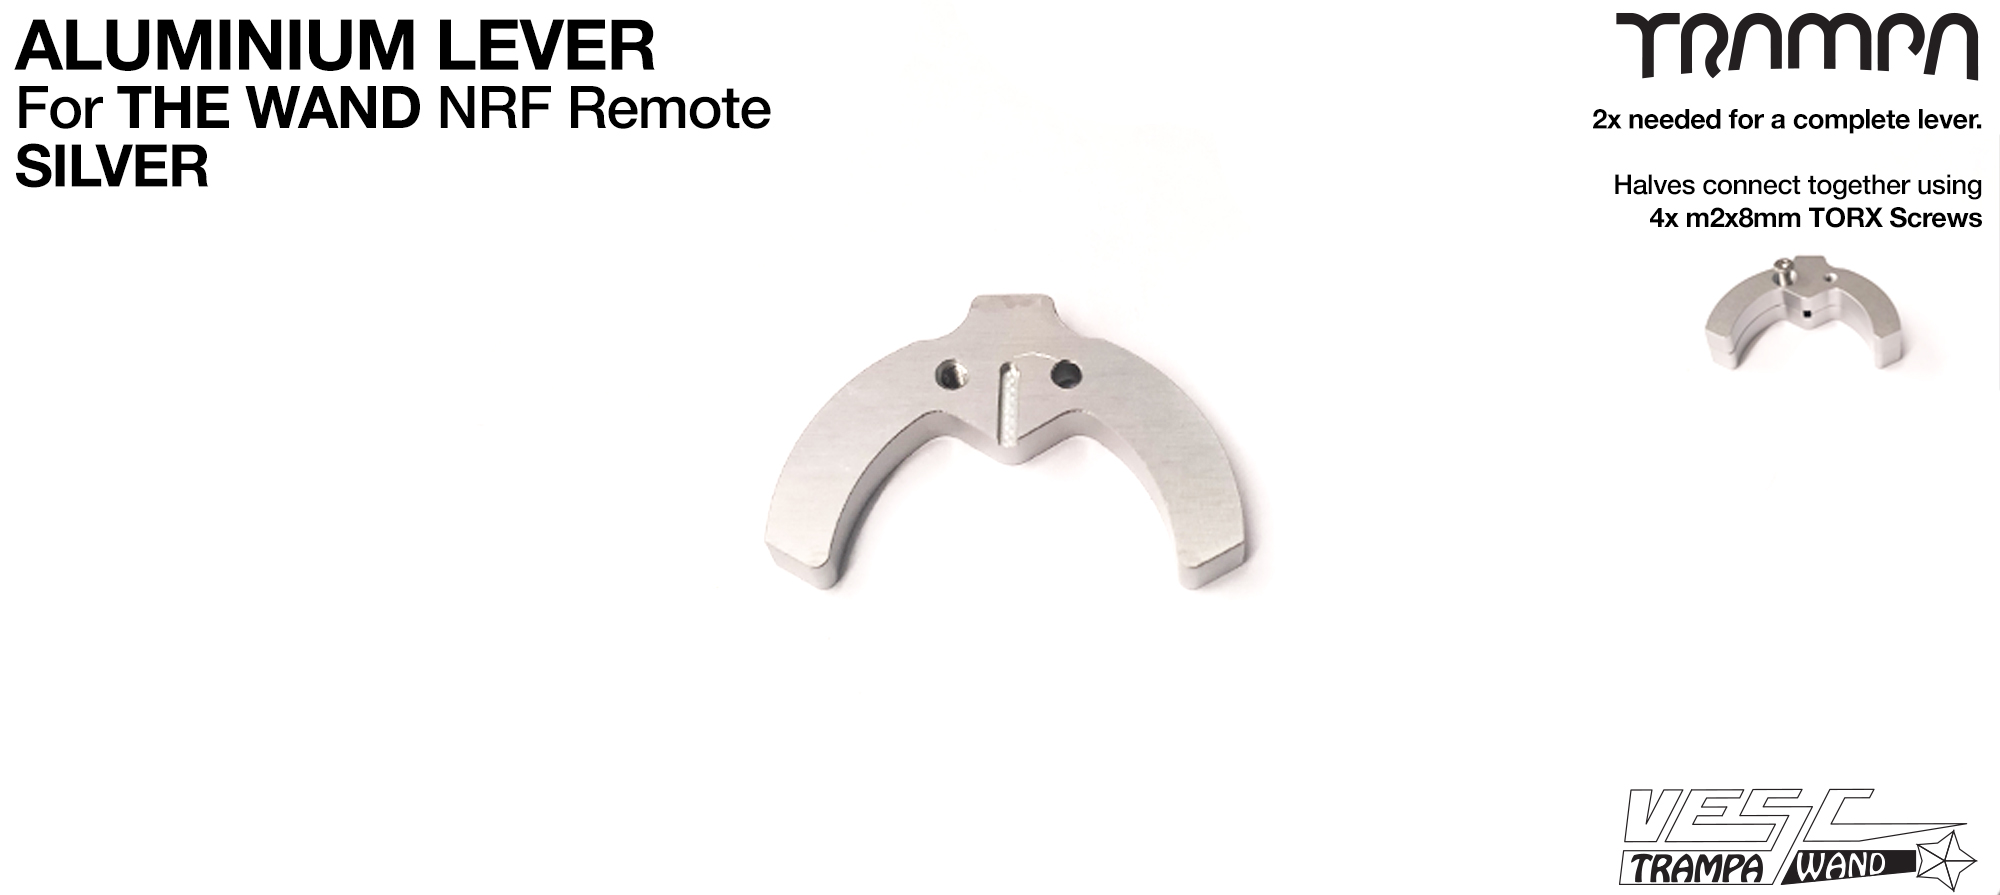 WAND - Aluminium Thumb Lever - SILVER